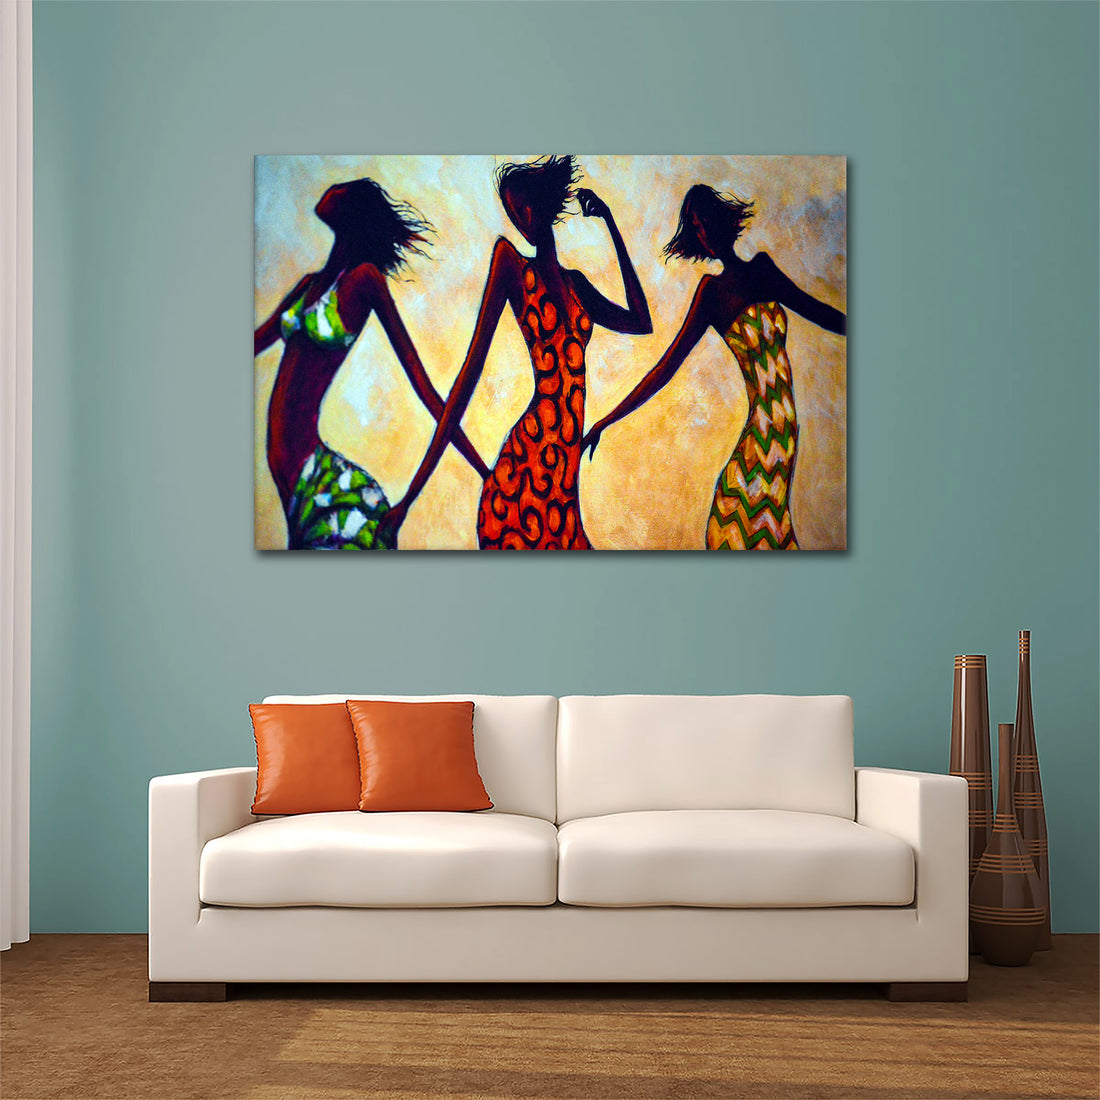 Wandbild afrikanische Frauen Abstract Dance